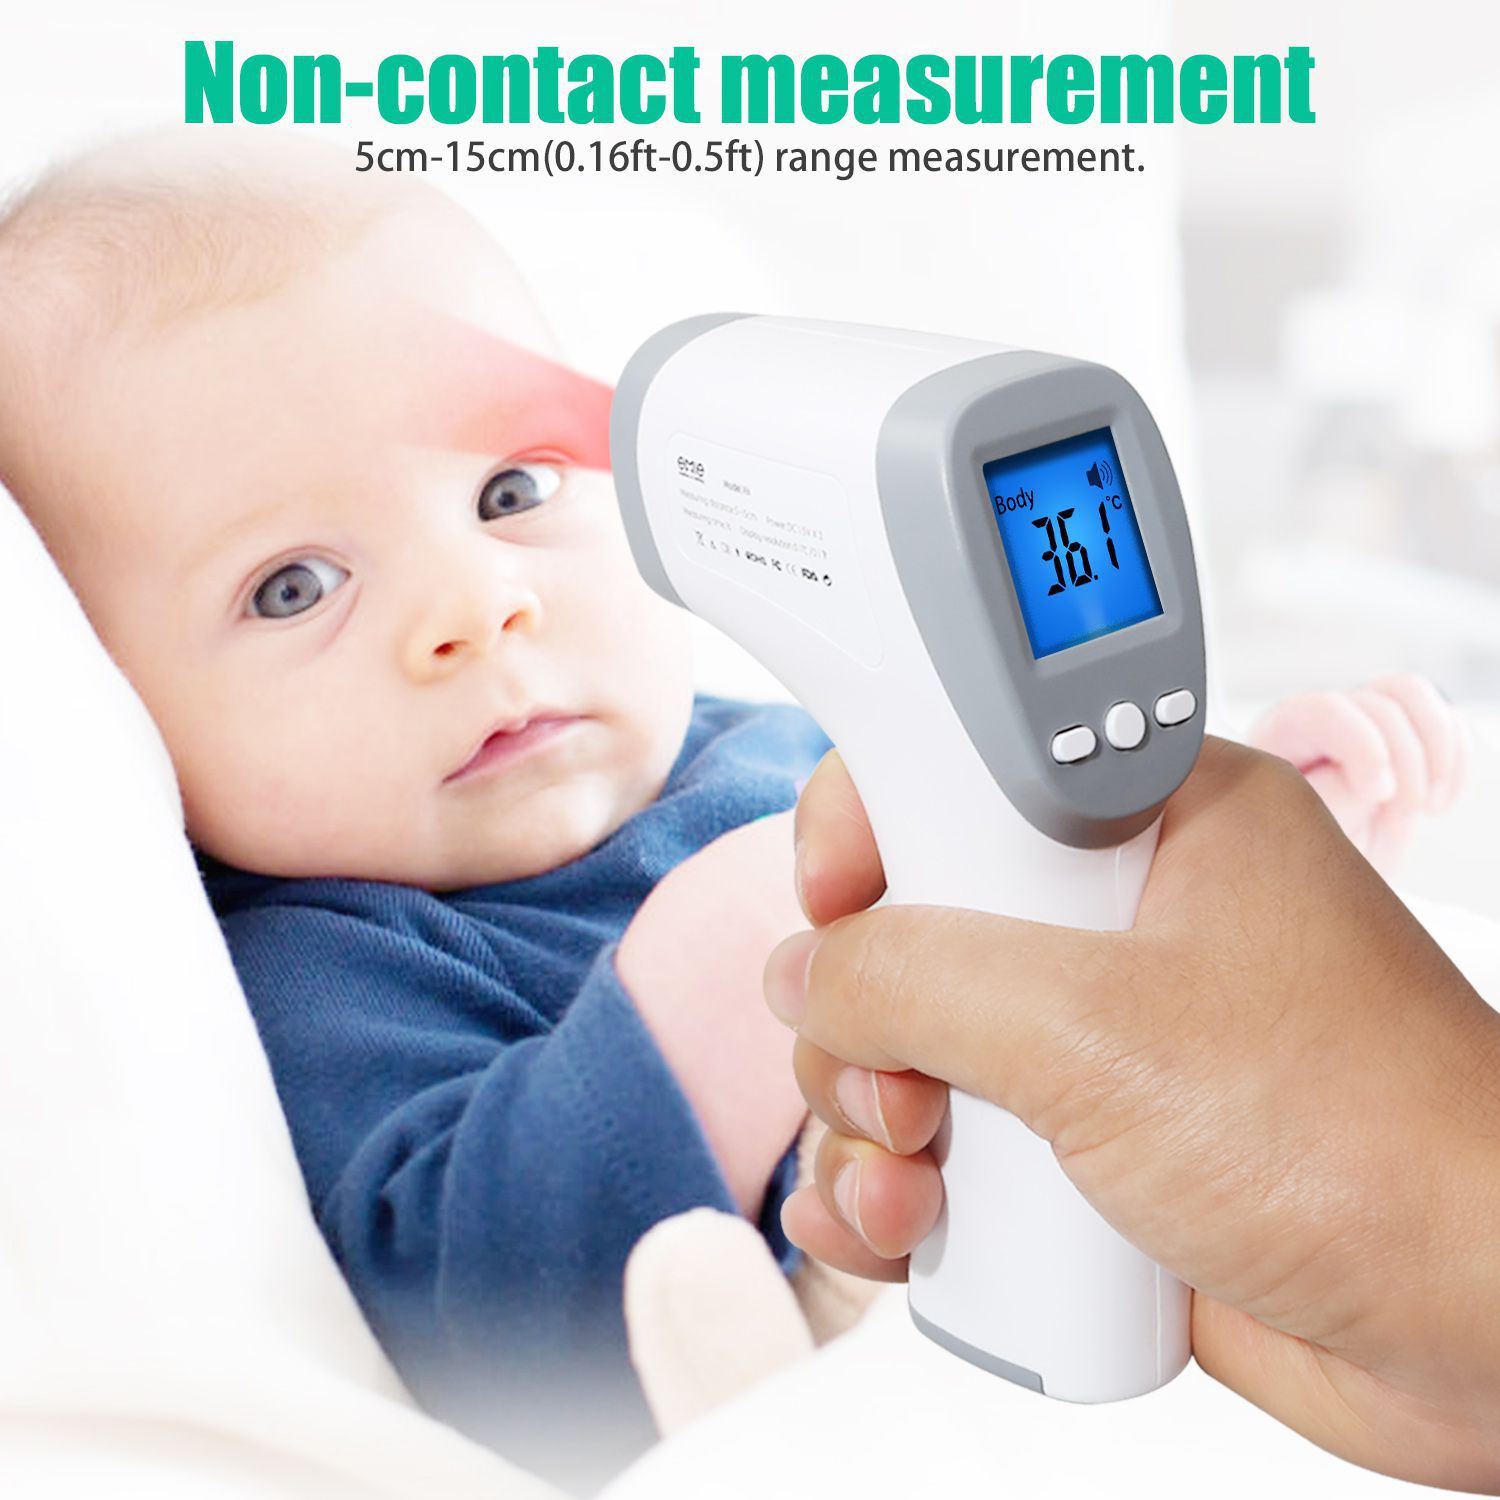 инфракрасный термометр медицинский уровень ± 0,2°C сверхпрецизионный ребенок взрослый лоб неконтактный жидкокристаллический дисплей